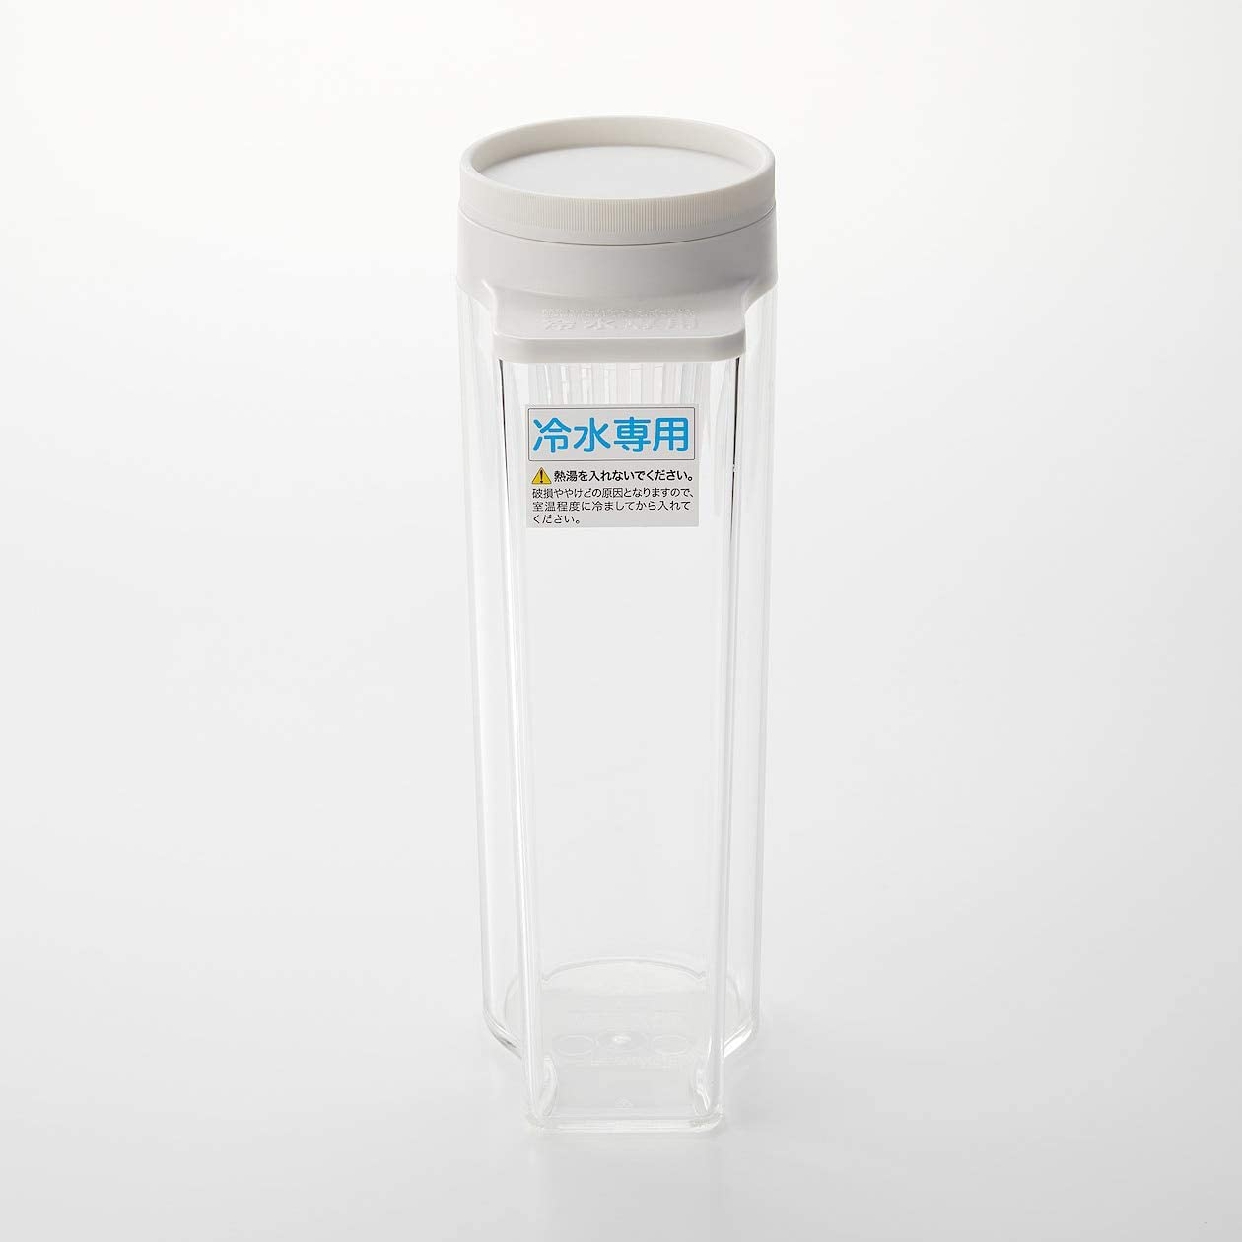 無印良品(MUJI) アクリル冷水筒 冷水専用約2L 44220931の商品画像3 